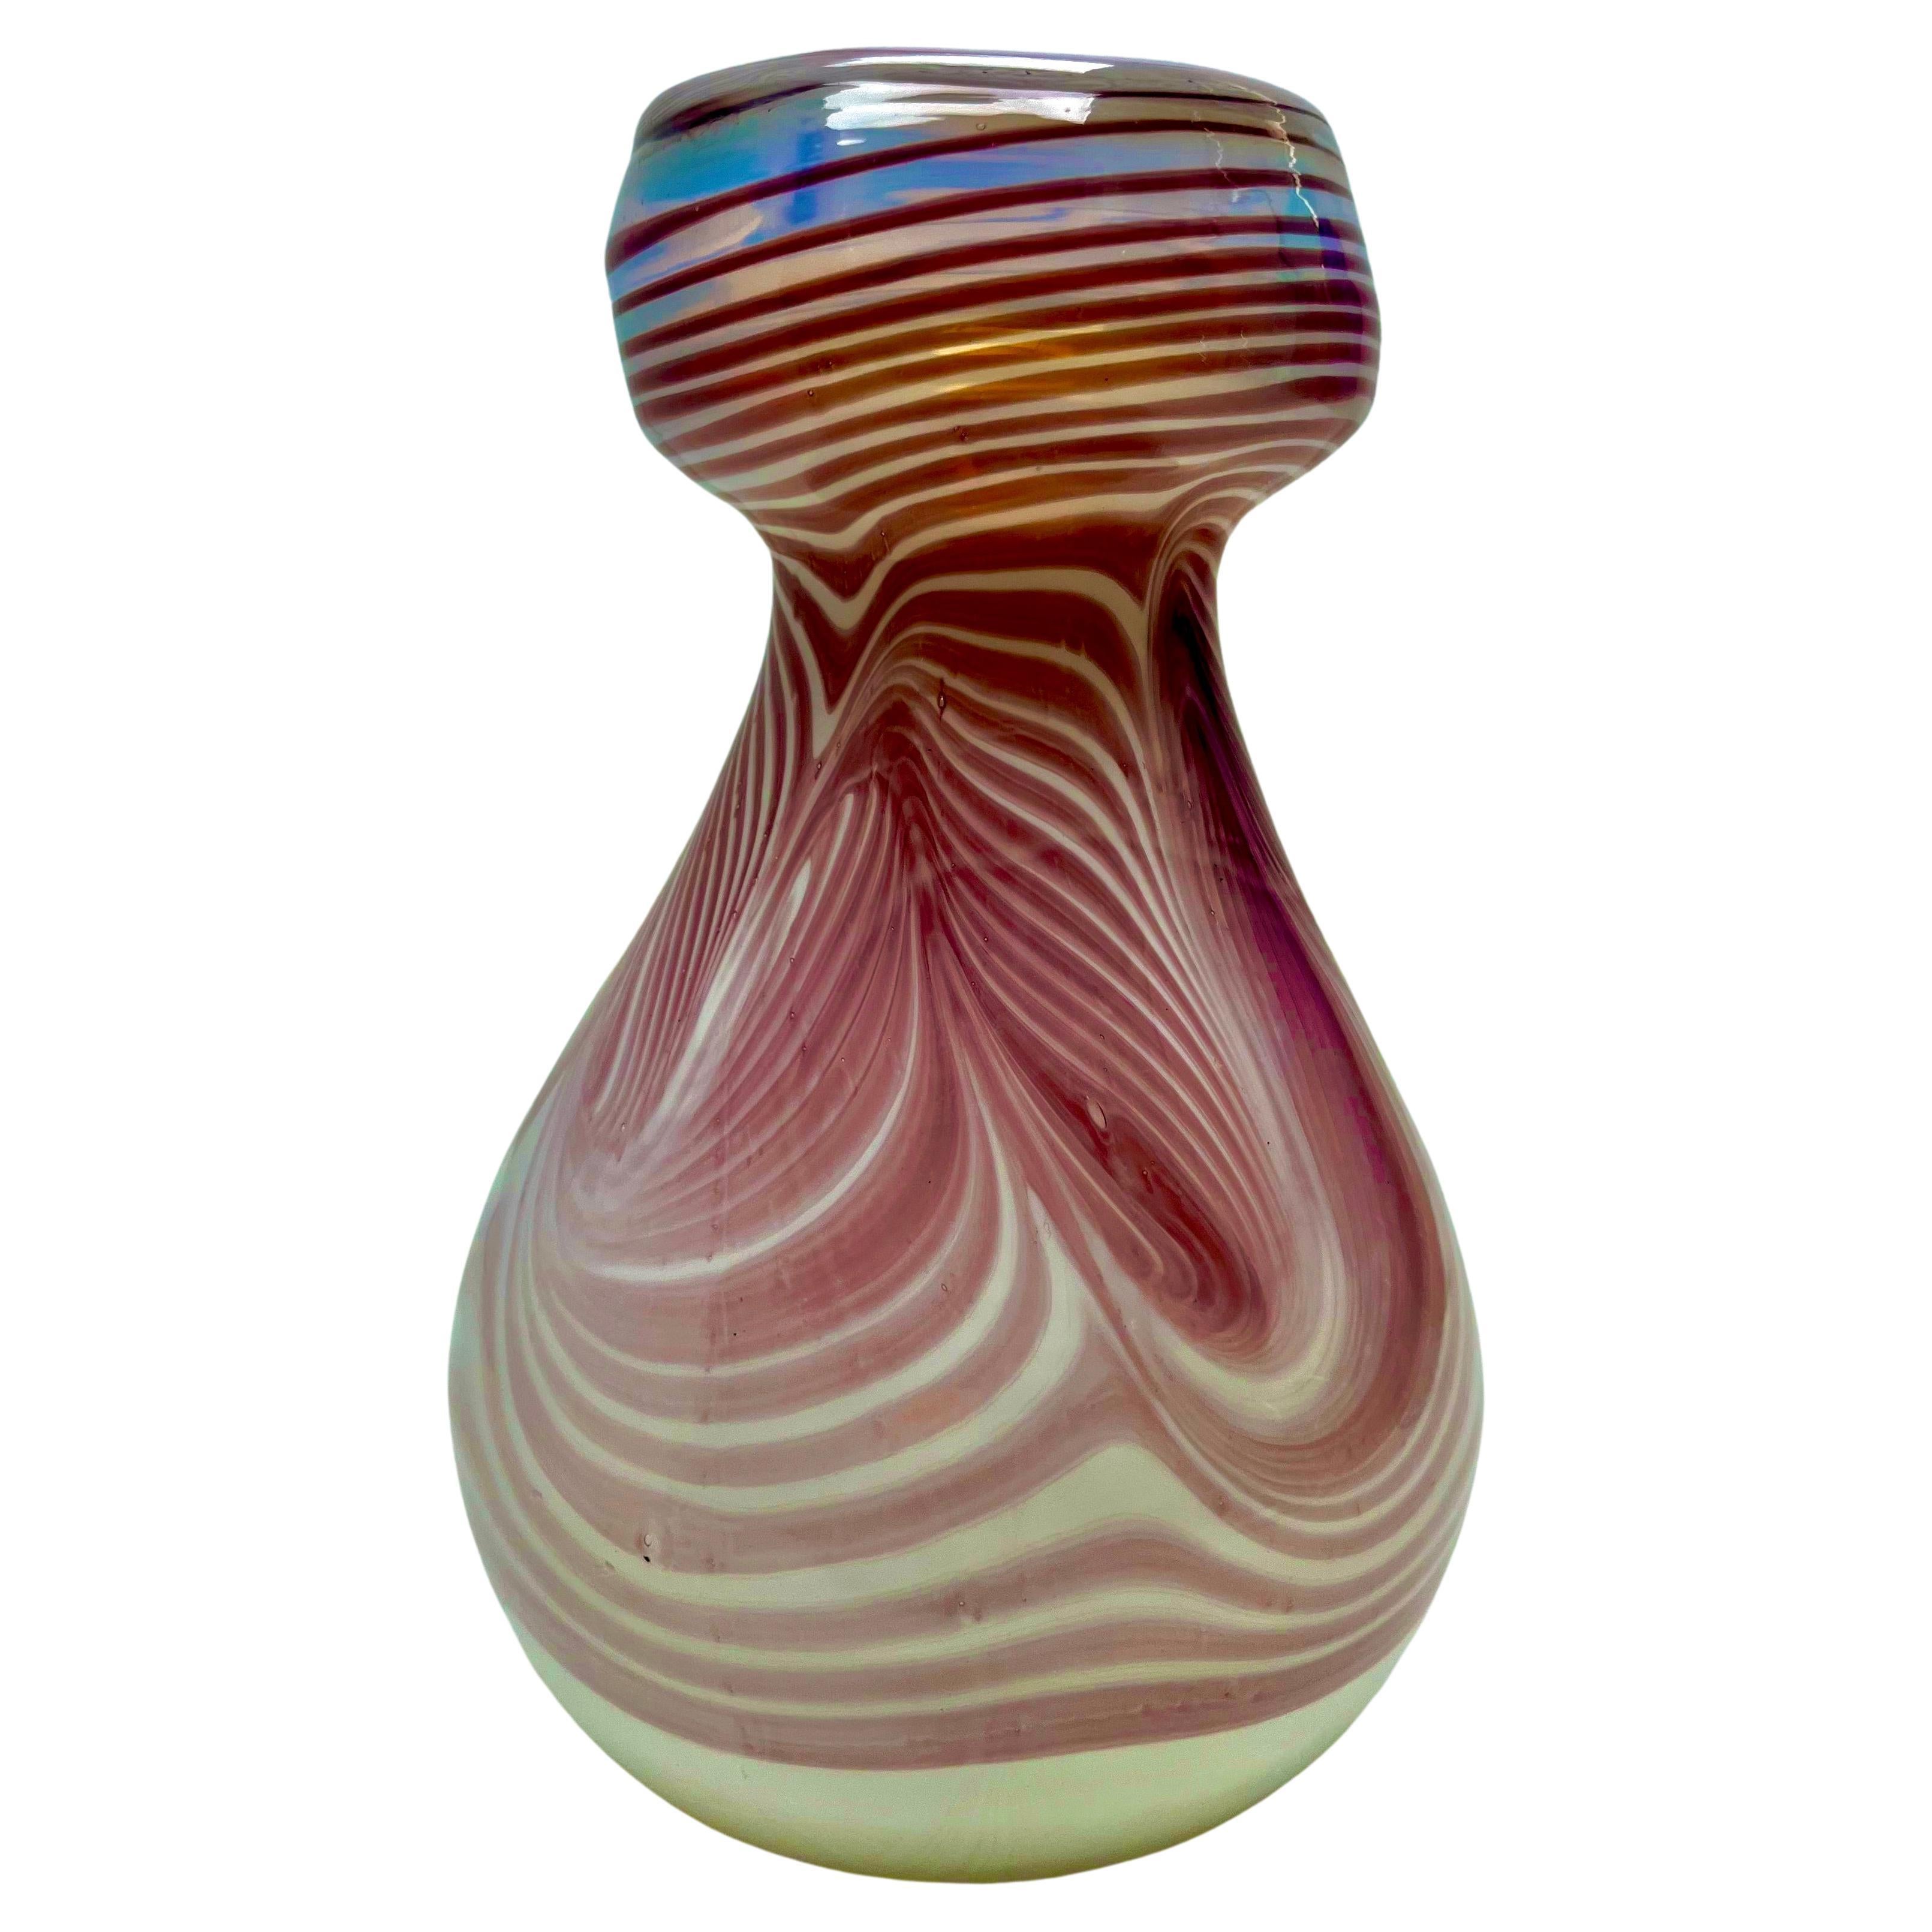 Kollektion von Erwin Eisch, signierte Vintage-Vase, dickwandig, schwer – Kunstglas